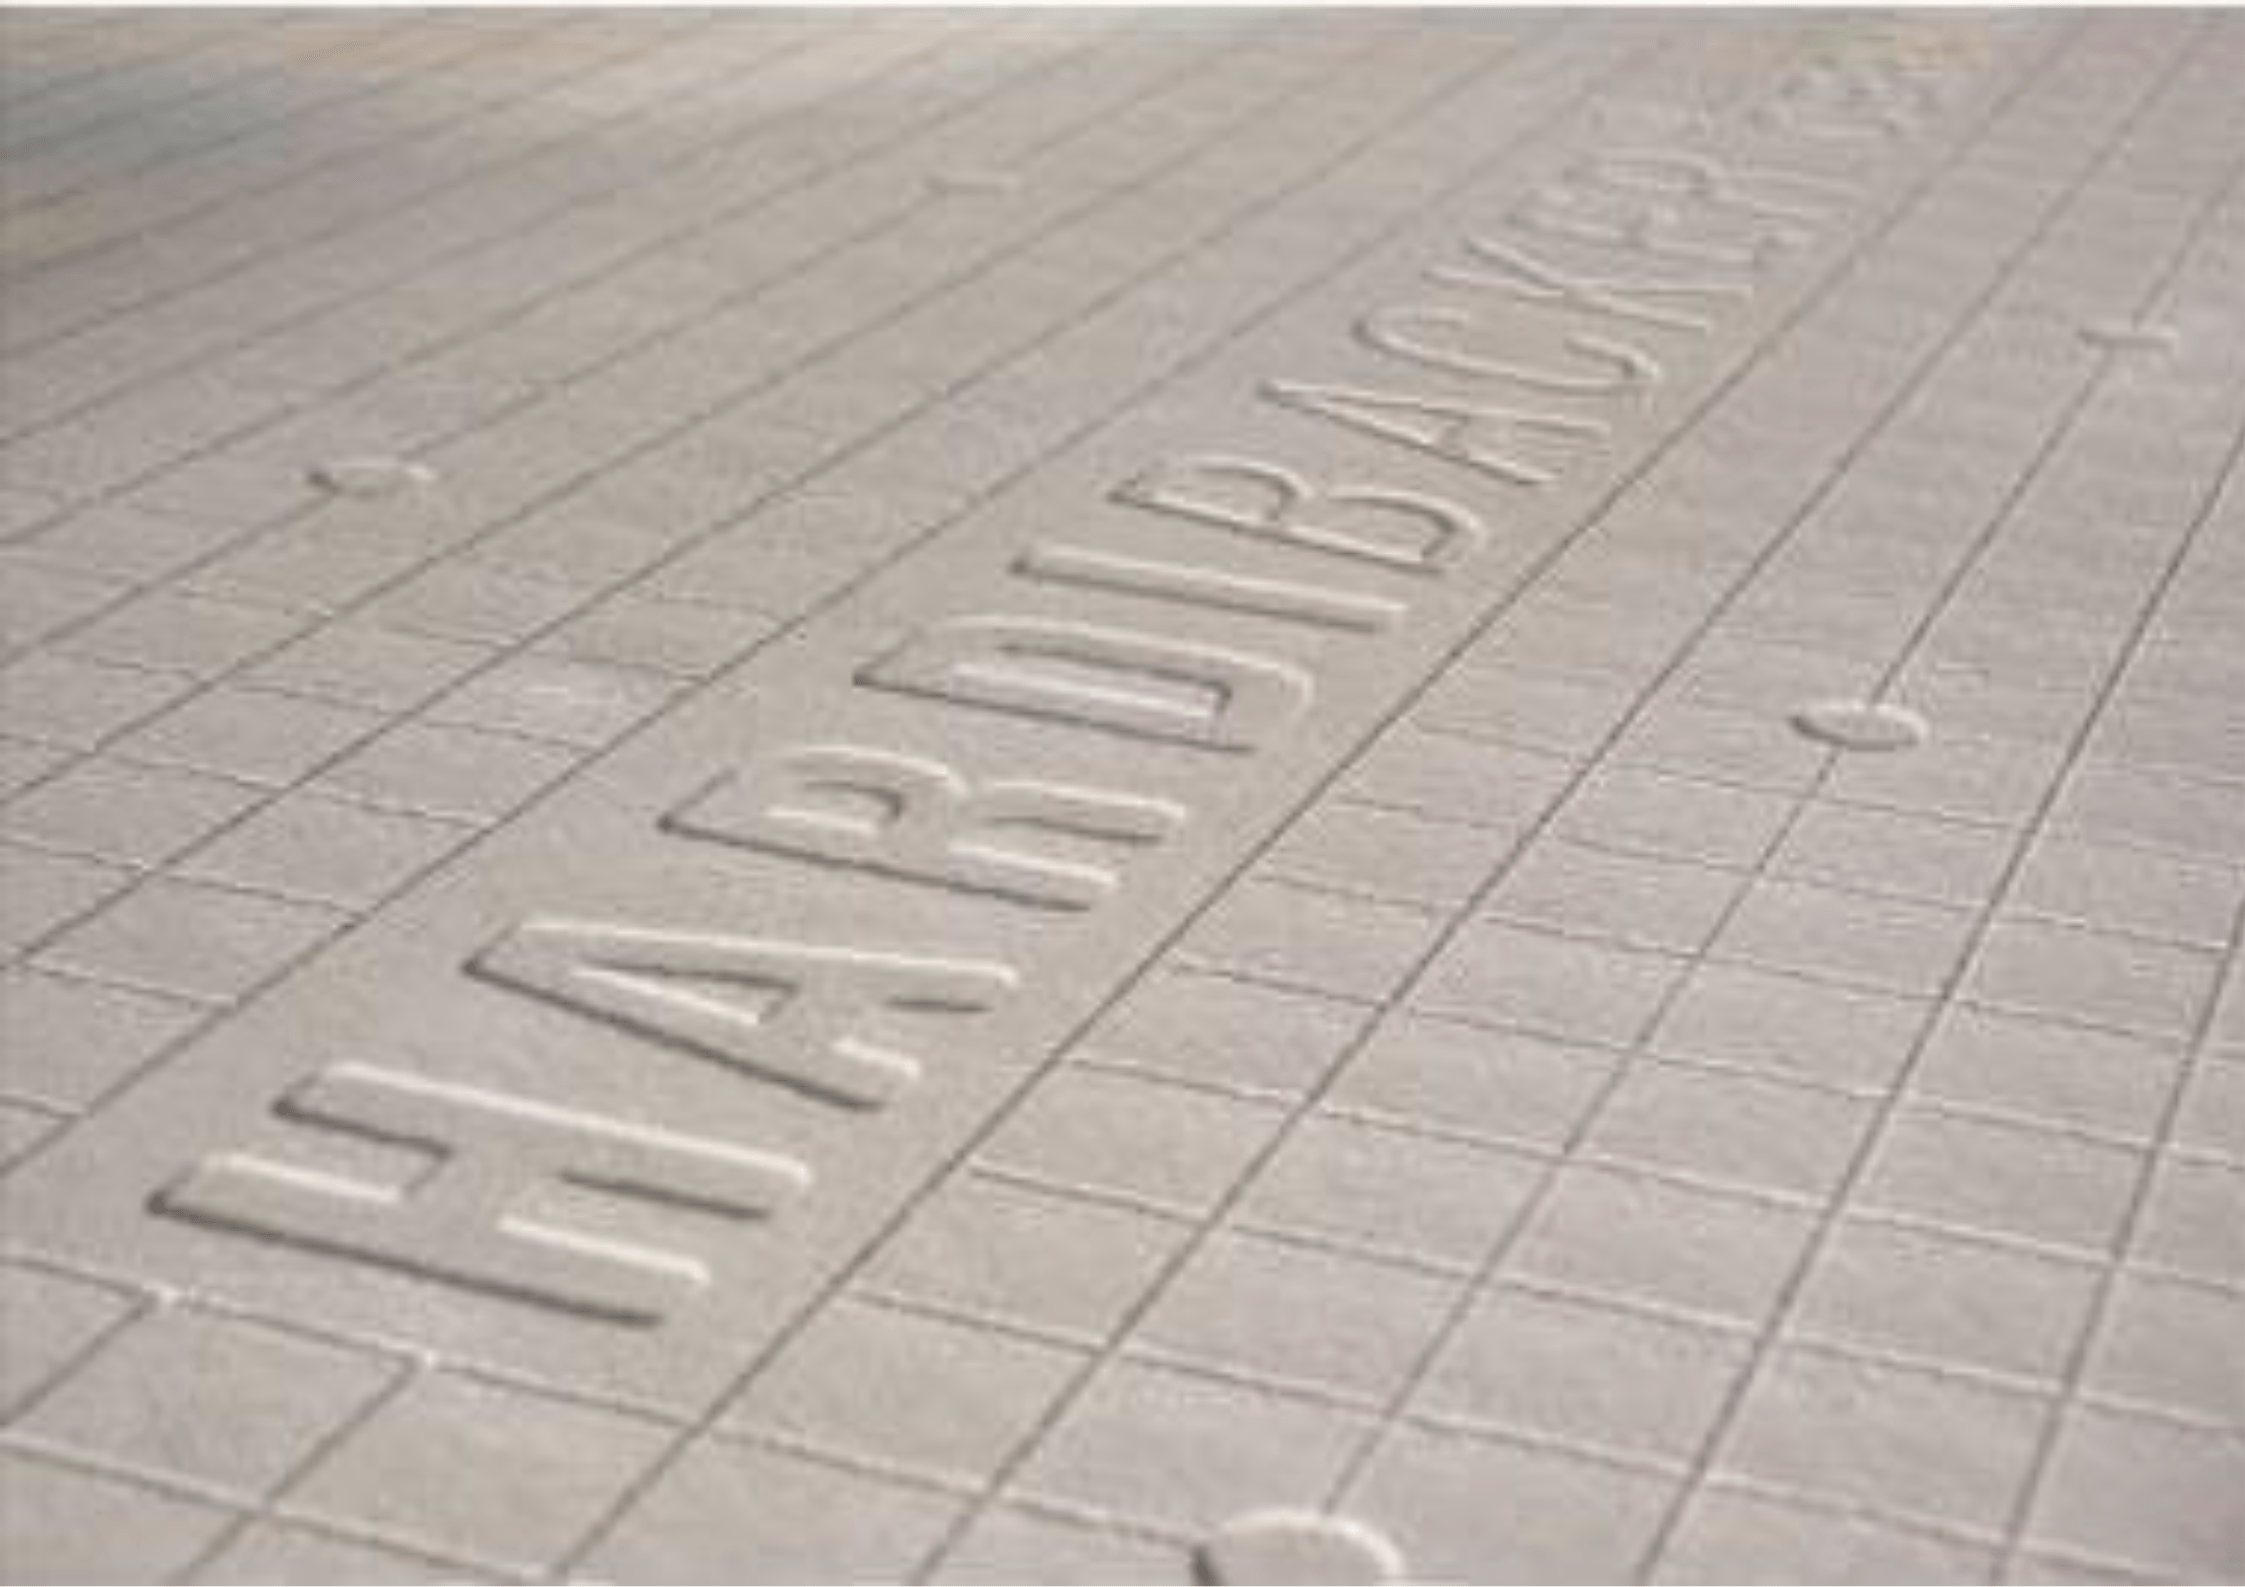 James Hardie Hardie® Backer Tile Backerboard 1200mm x 800mm x 12mm - Pallet of 50 IUK01644 Hardie® Backer Tile Backerboard 1200mm x 800mm x 12mm - Pallet of 50 | insulationuk.co.uk